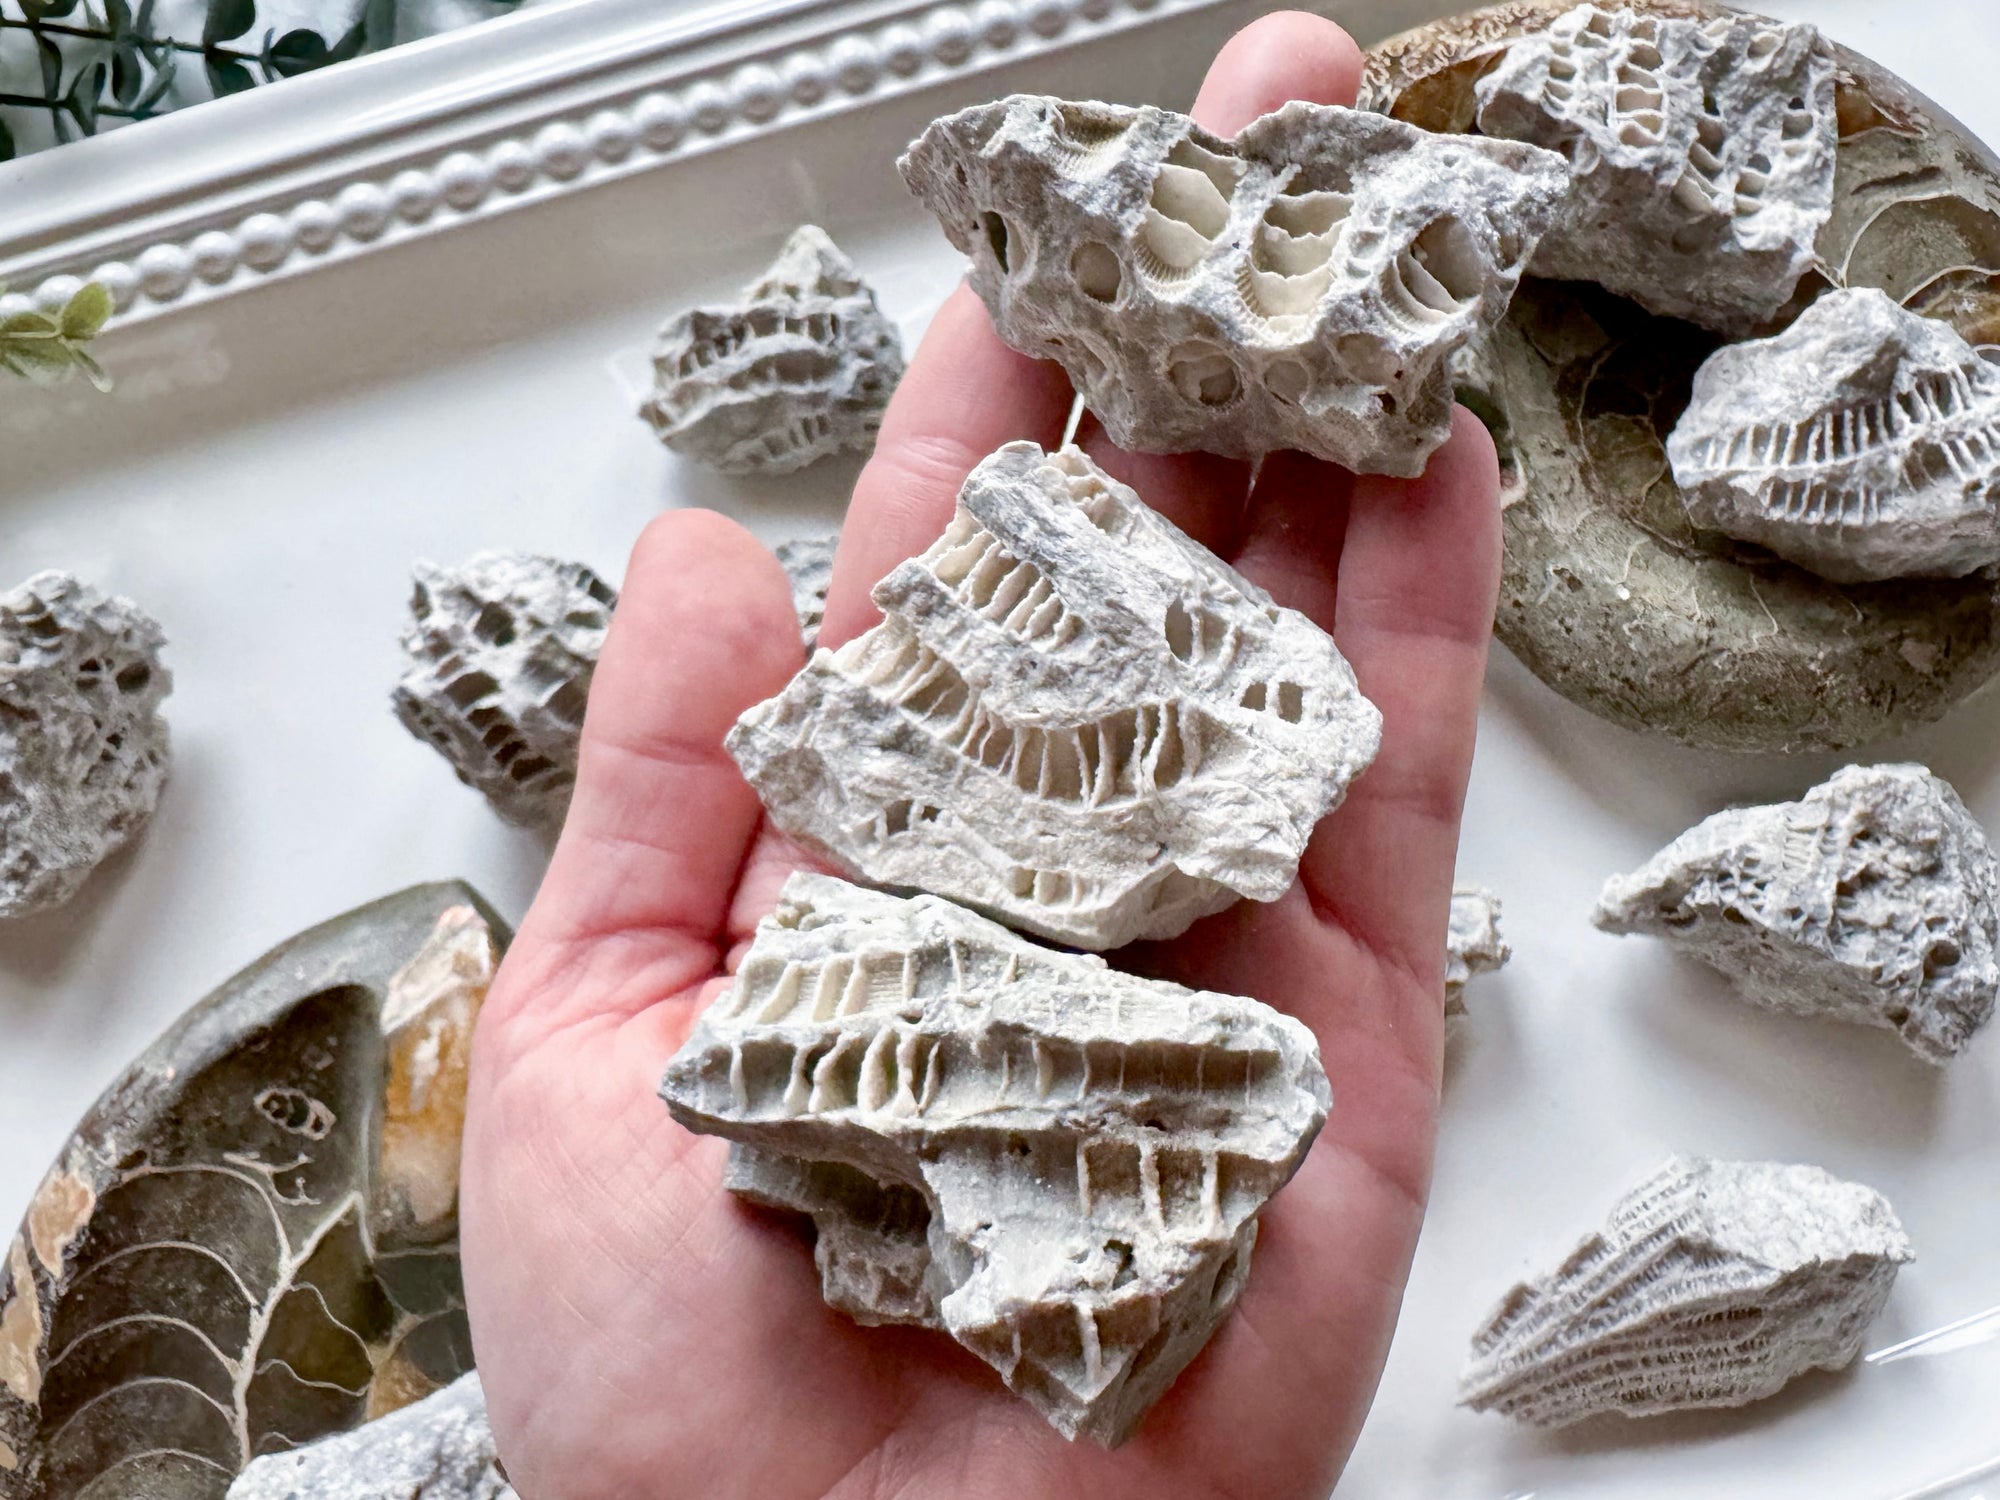 Druzy Fossil Coral || Clay Center, Ohio